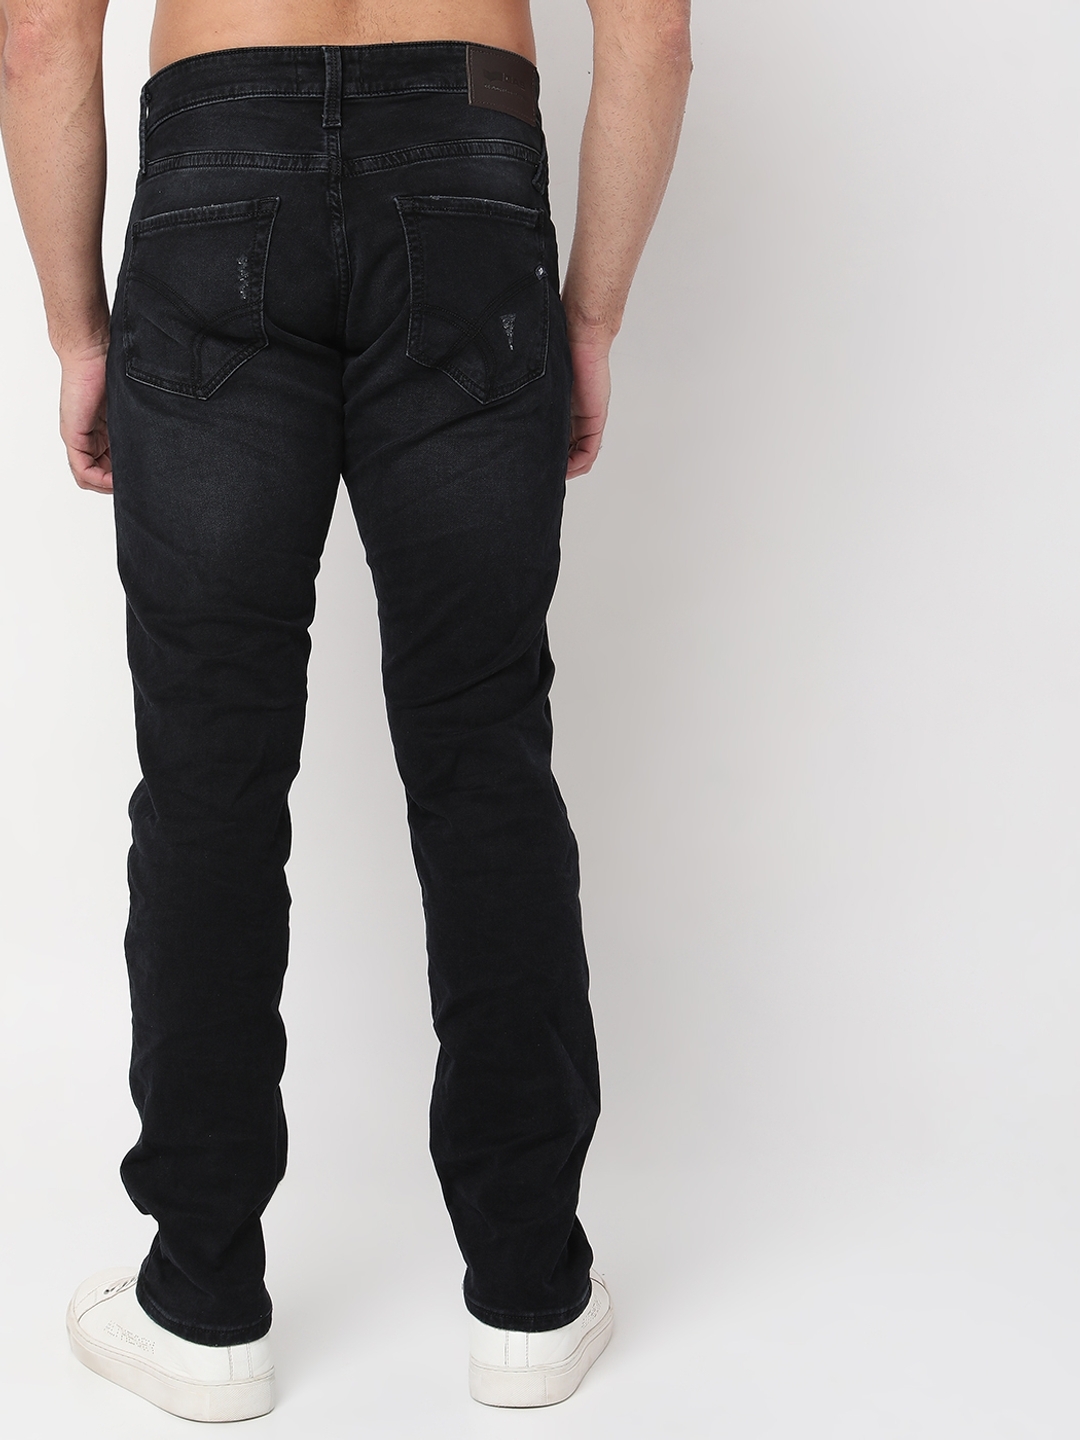 GAS Skinny Jeans | Mercari